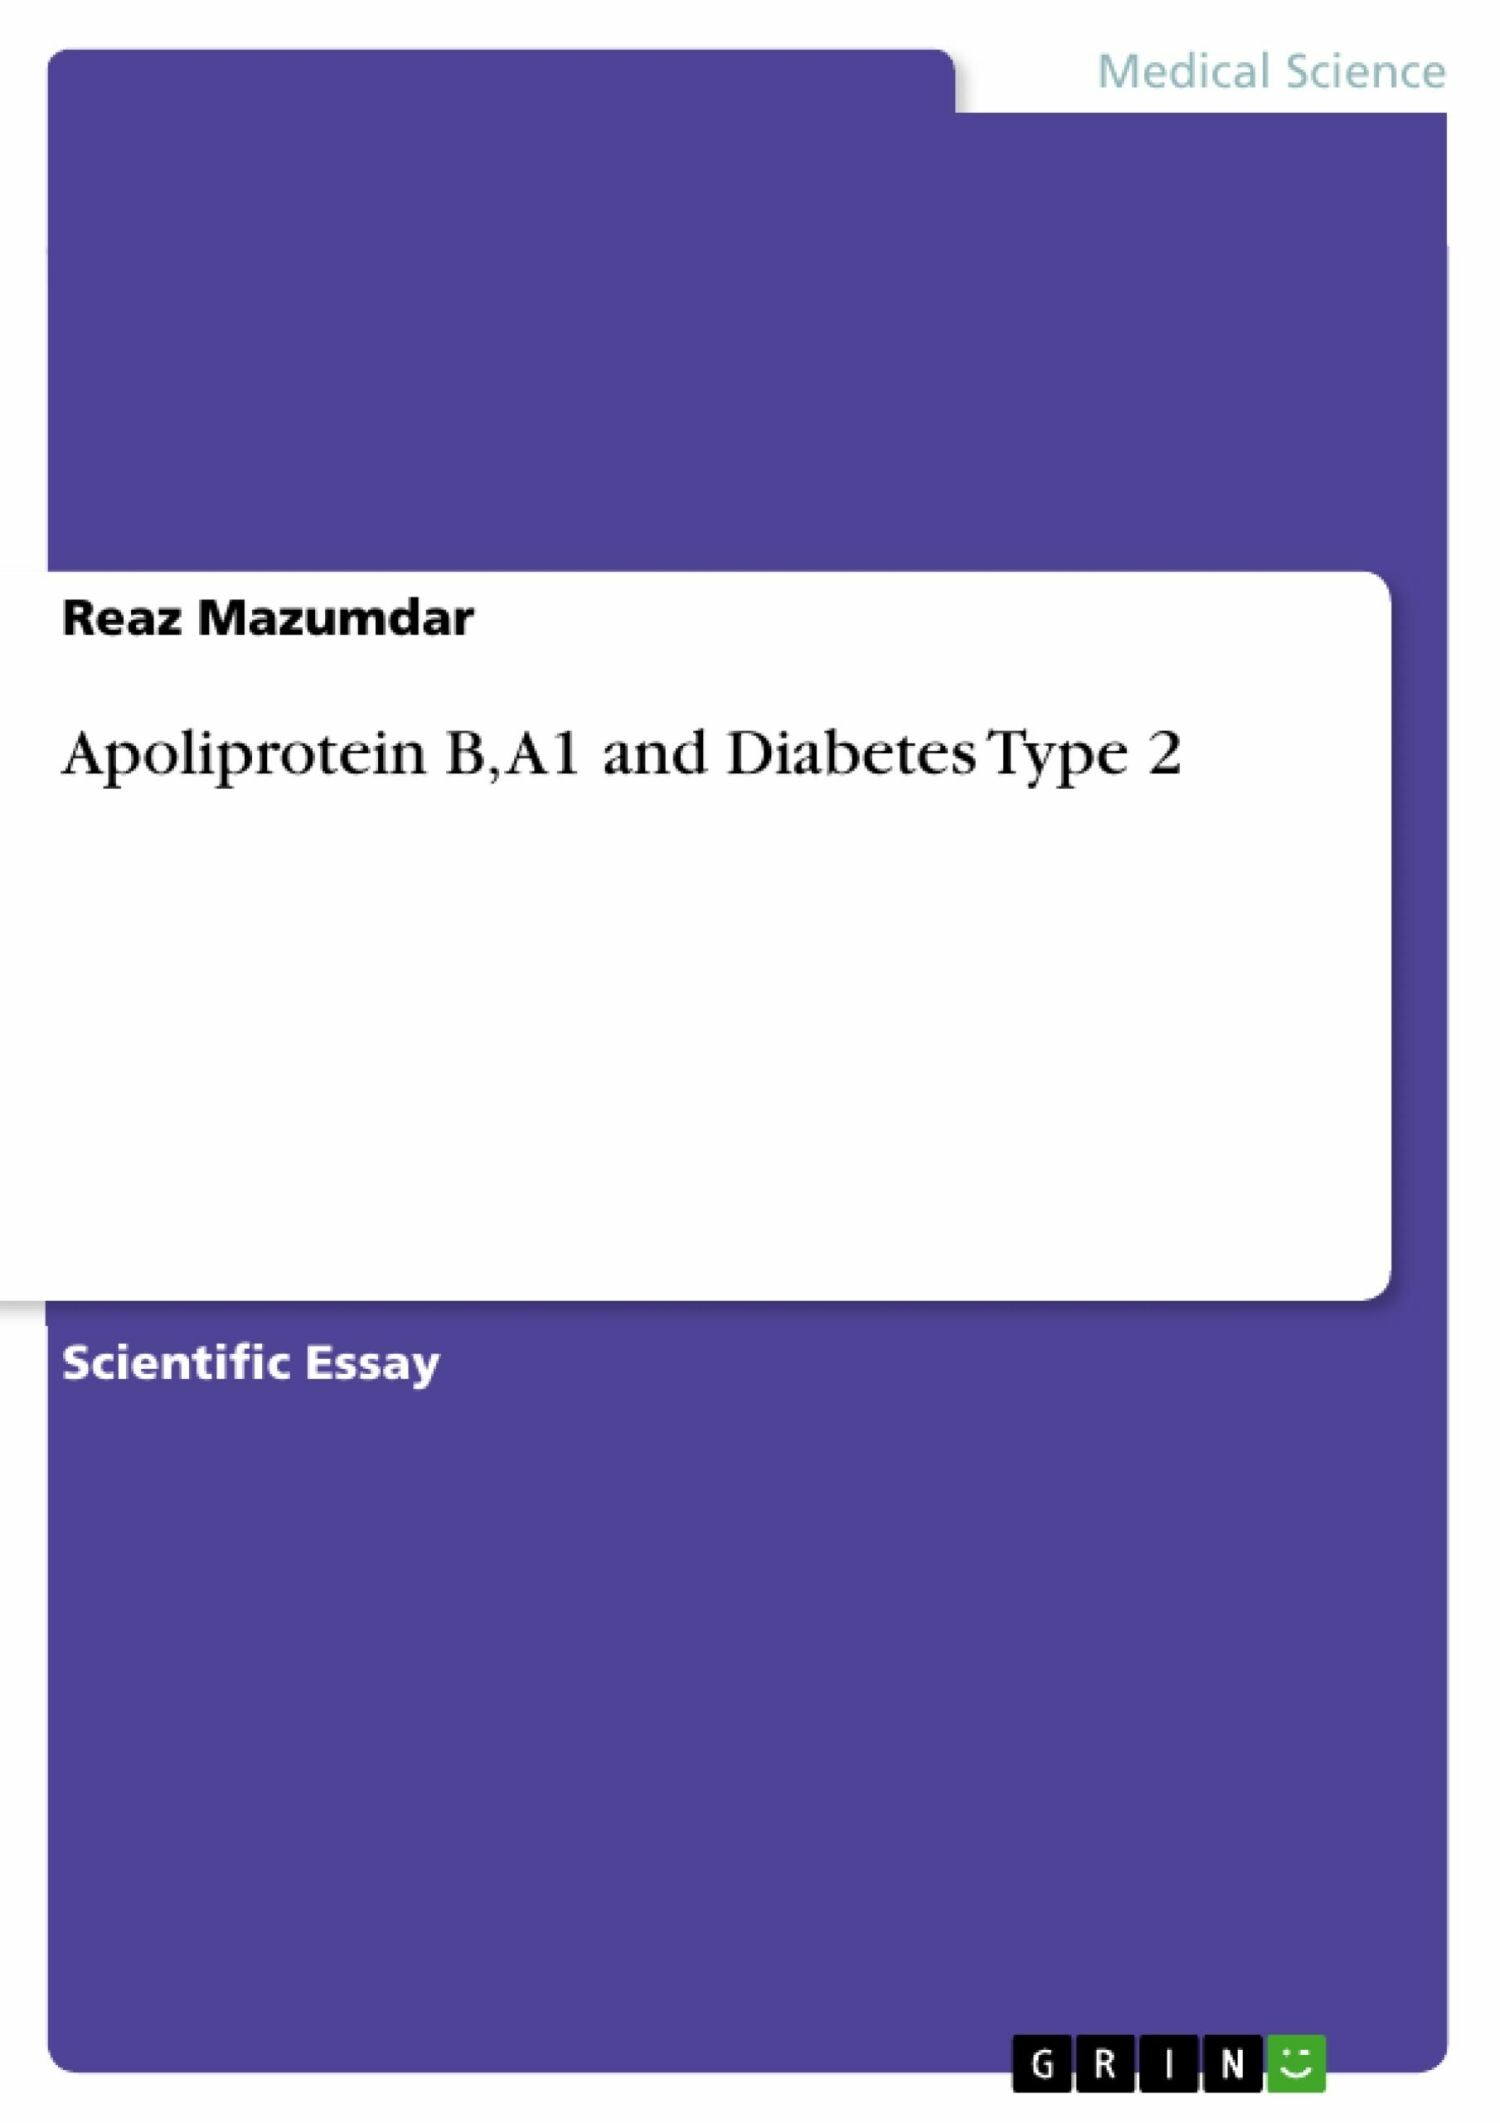 Apoliprotein B, A1 and Diabetes Type 2